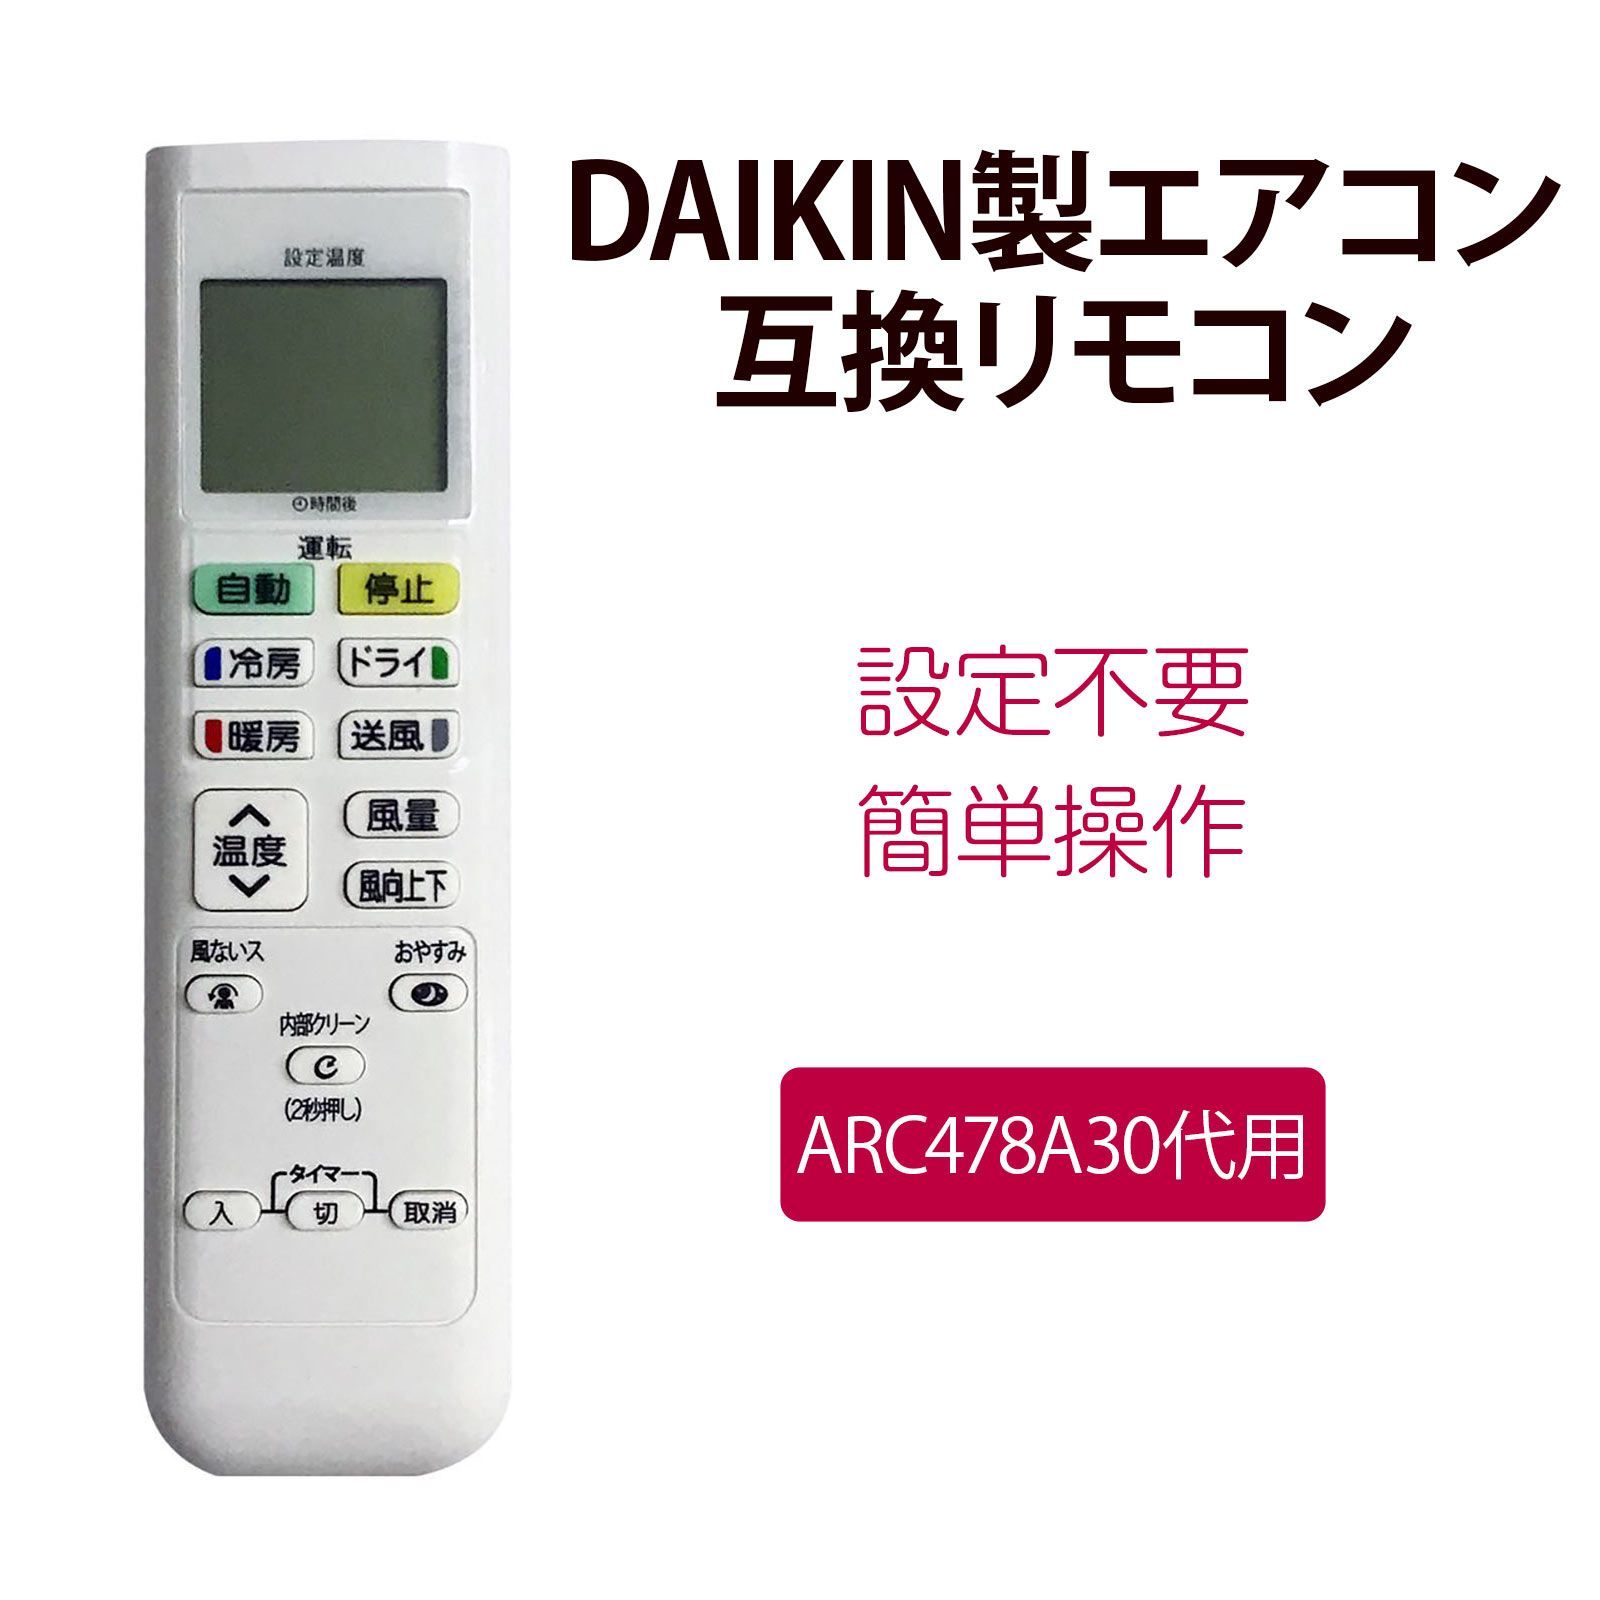 ダイキン エアコンリモコン ARC478A30 互換リモコン DAIKIN 2308678 交換リモコン 設定不要 簡単 汎用 - メルカリ